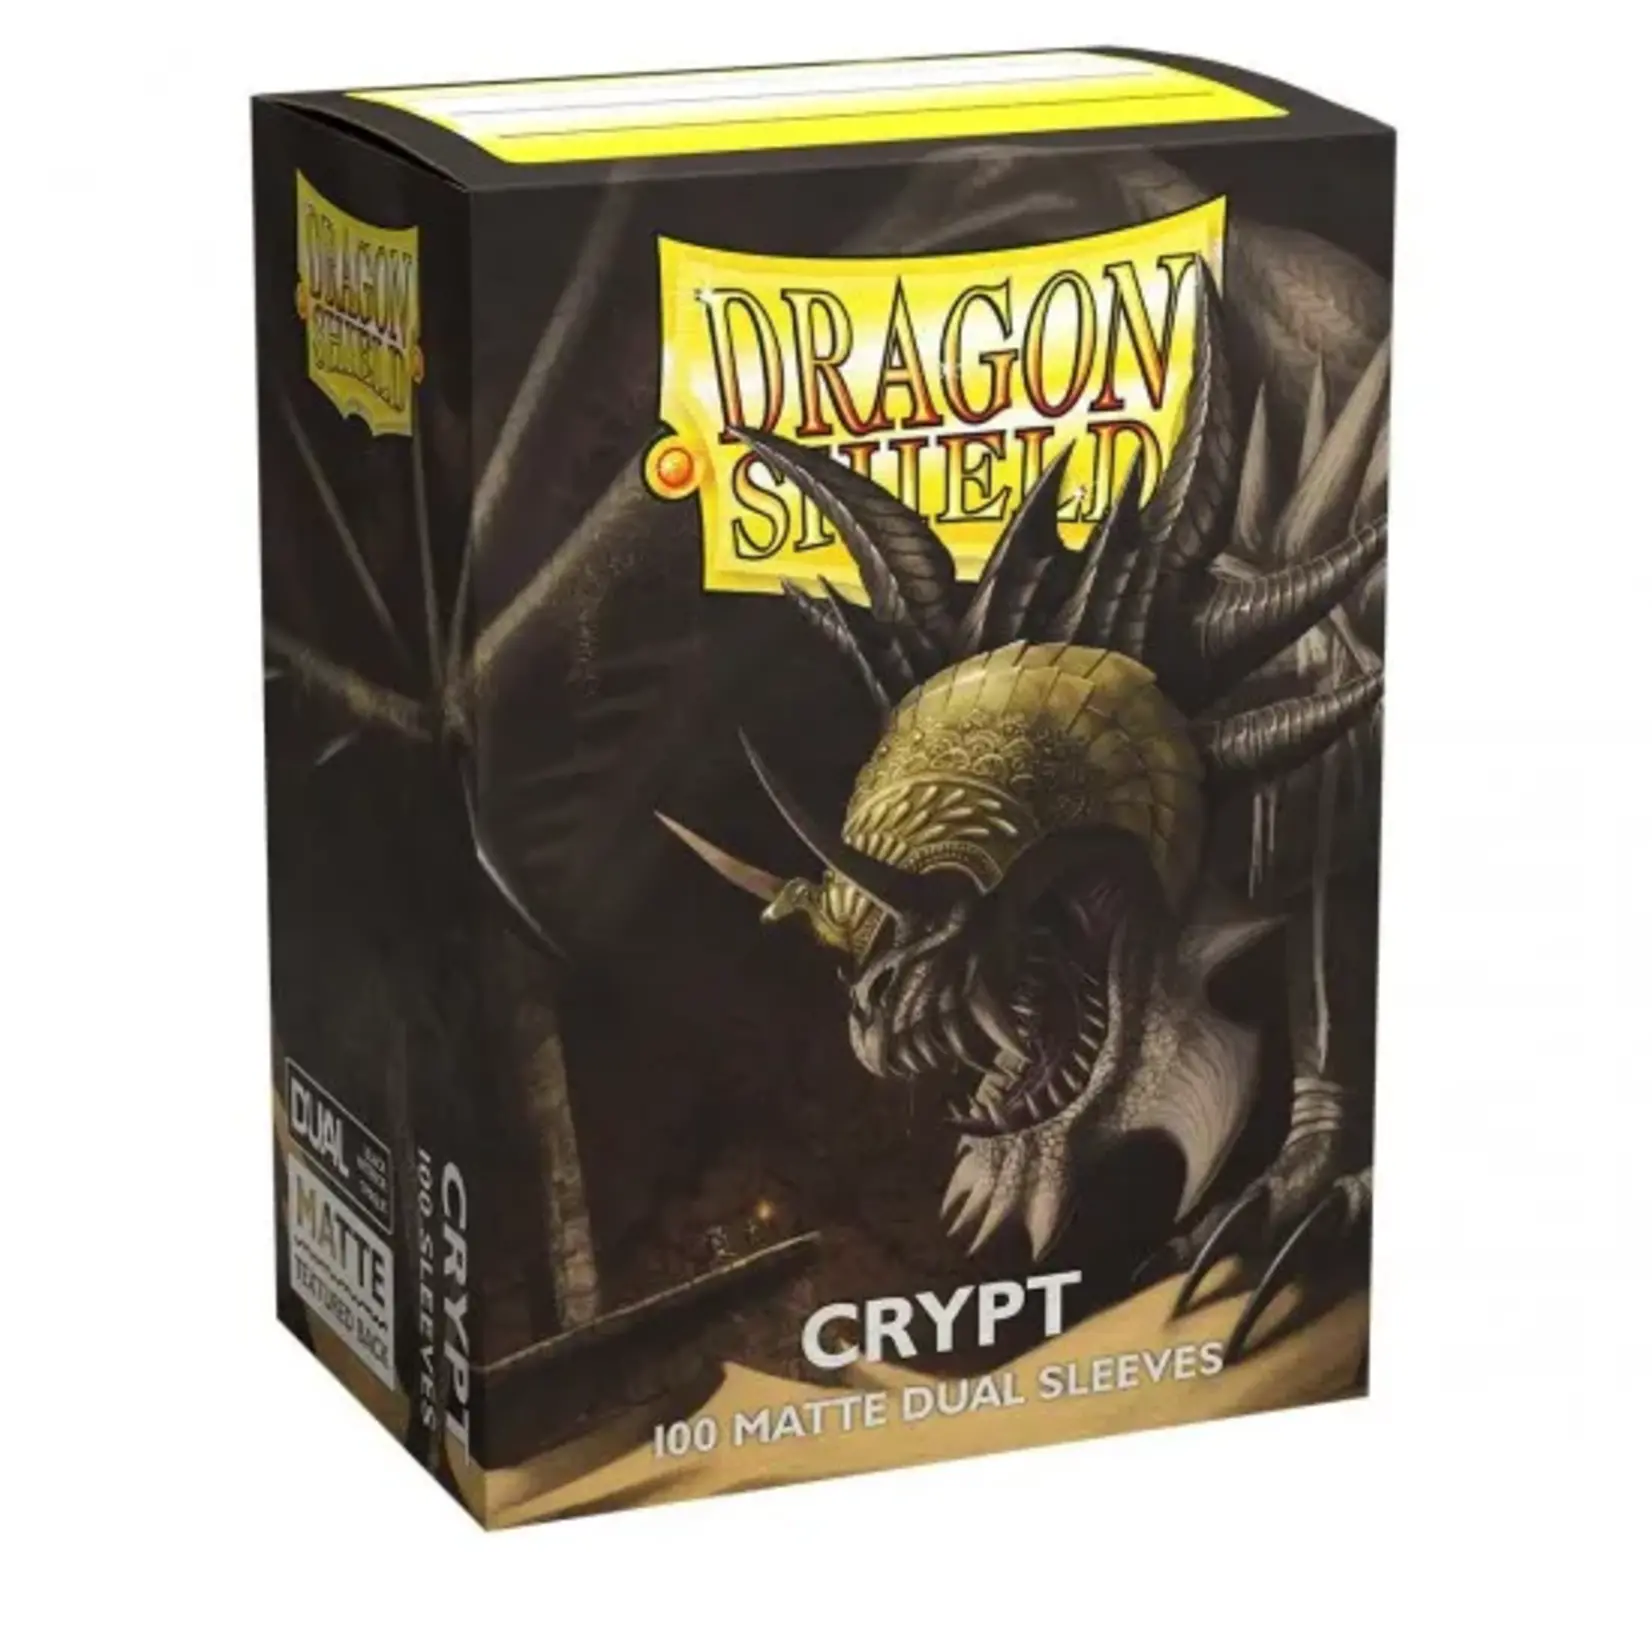 DRAGON SHIELD Dragon shield Crypt 100 Matte Dual Sleeves